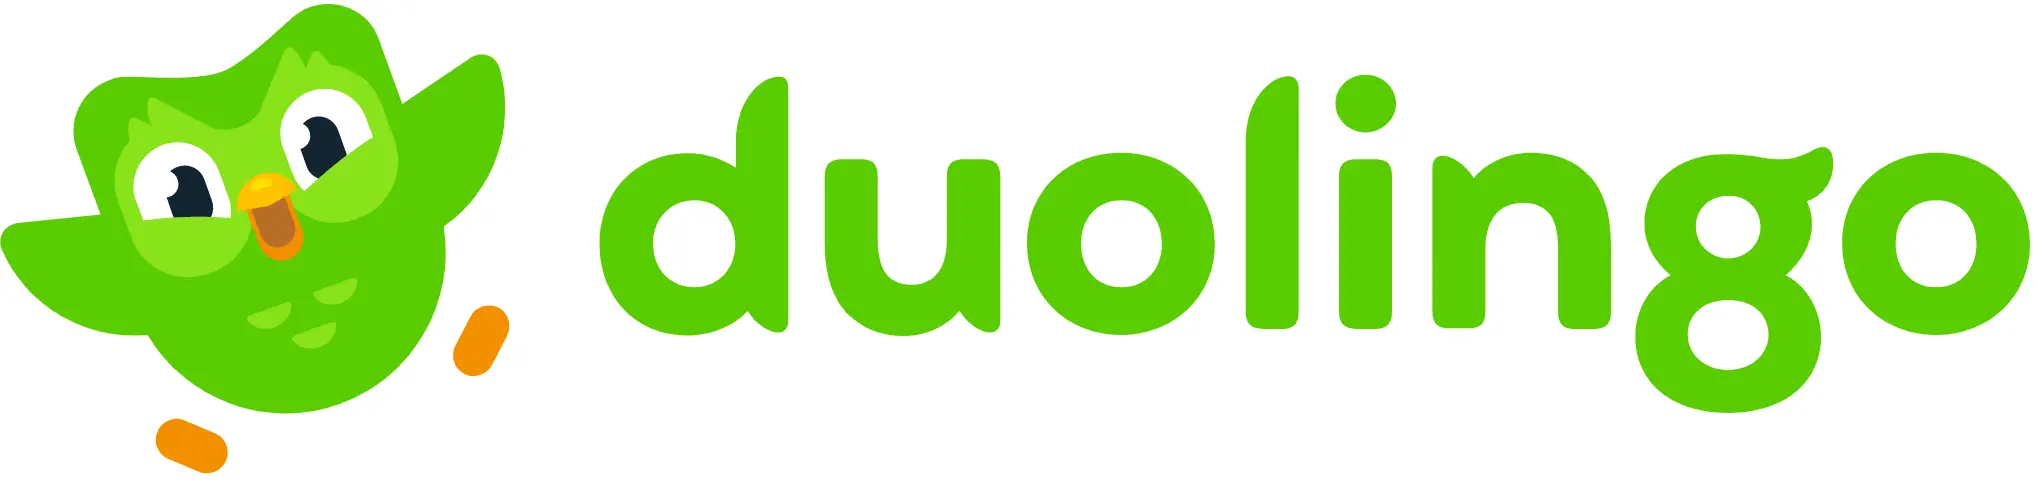 Duolingo wordmark logo